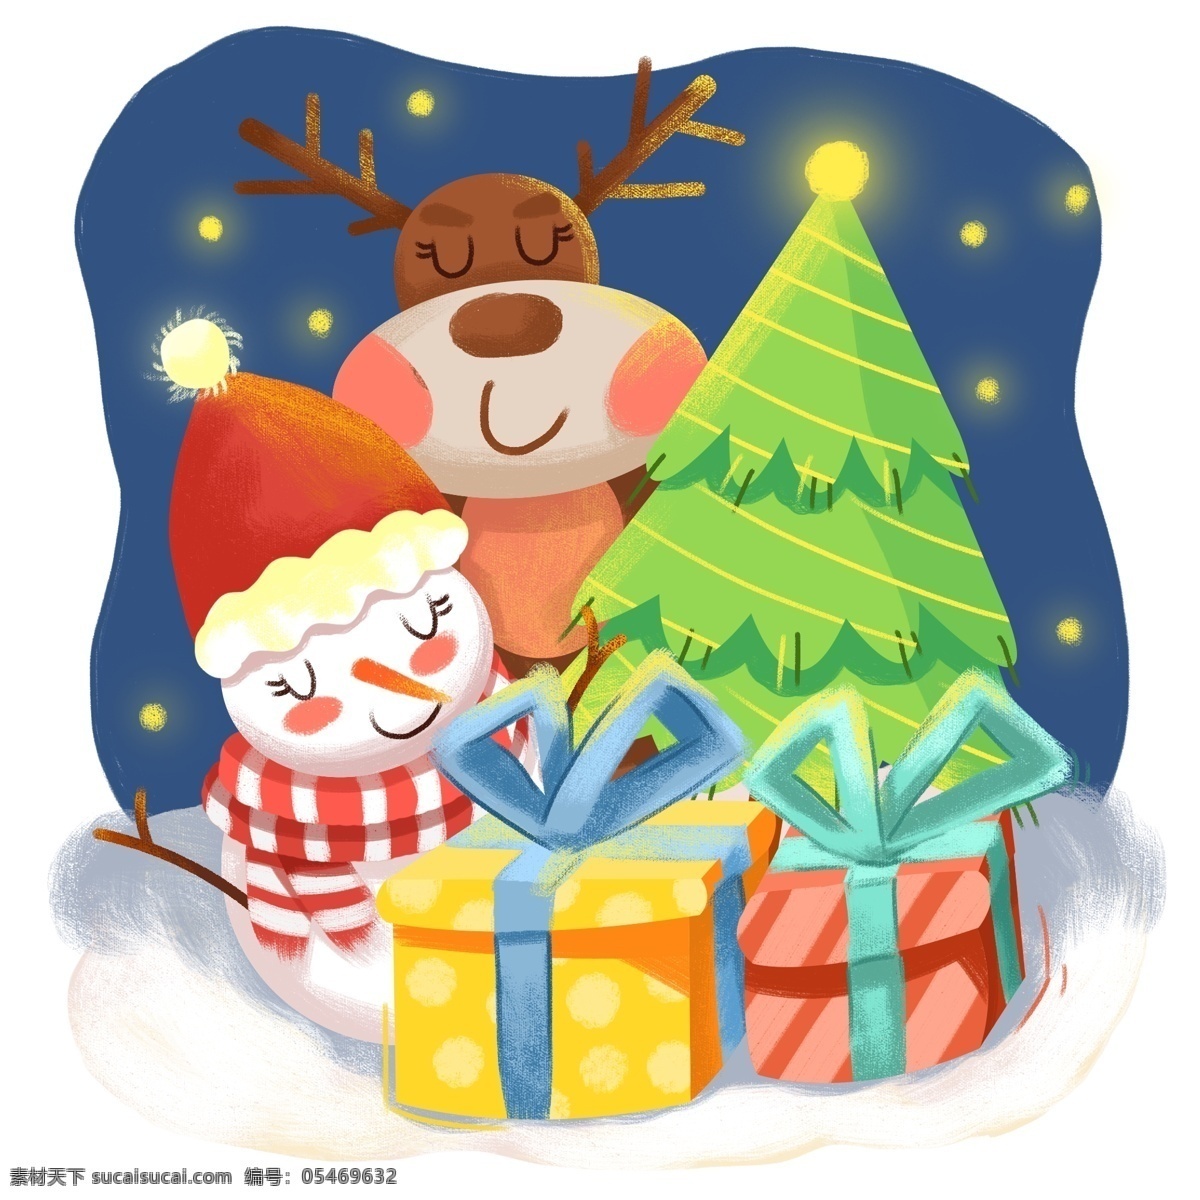 原创 手绘 可爱 麋鹿 圣诞节 礼物 盒 插画 元素 圣诞树 雪人 礼物盒 手绘元素 插画元素 海报元素 平安夜